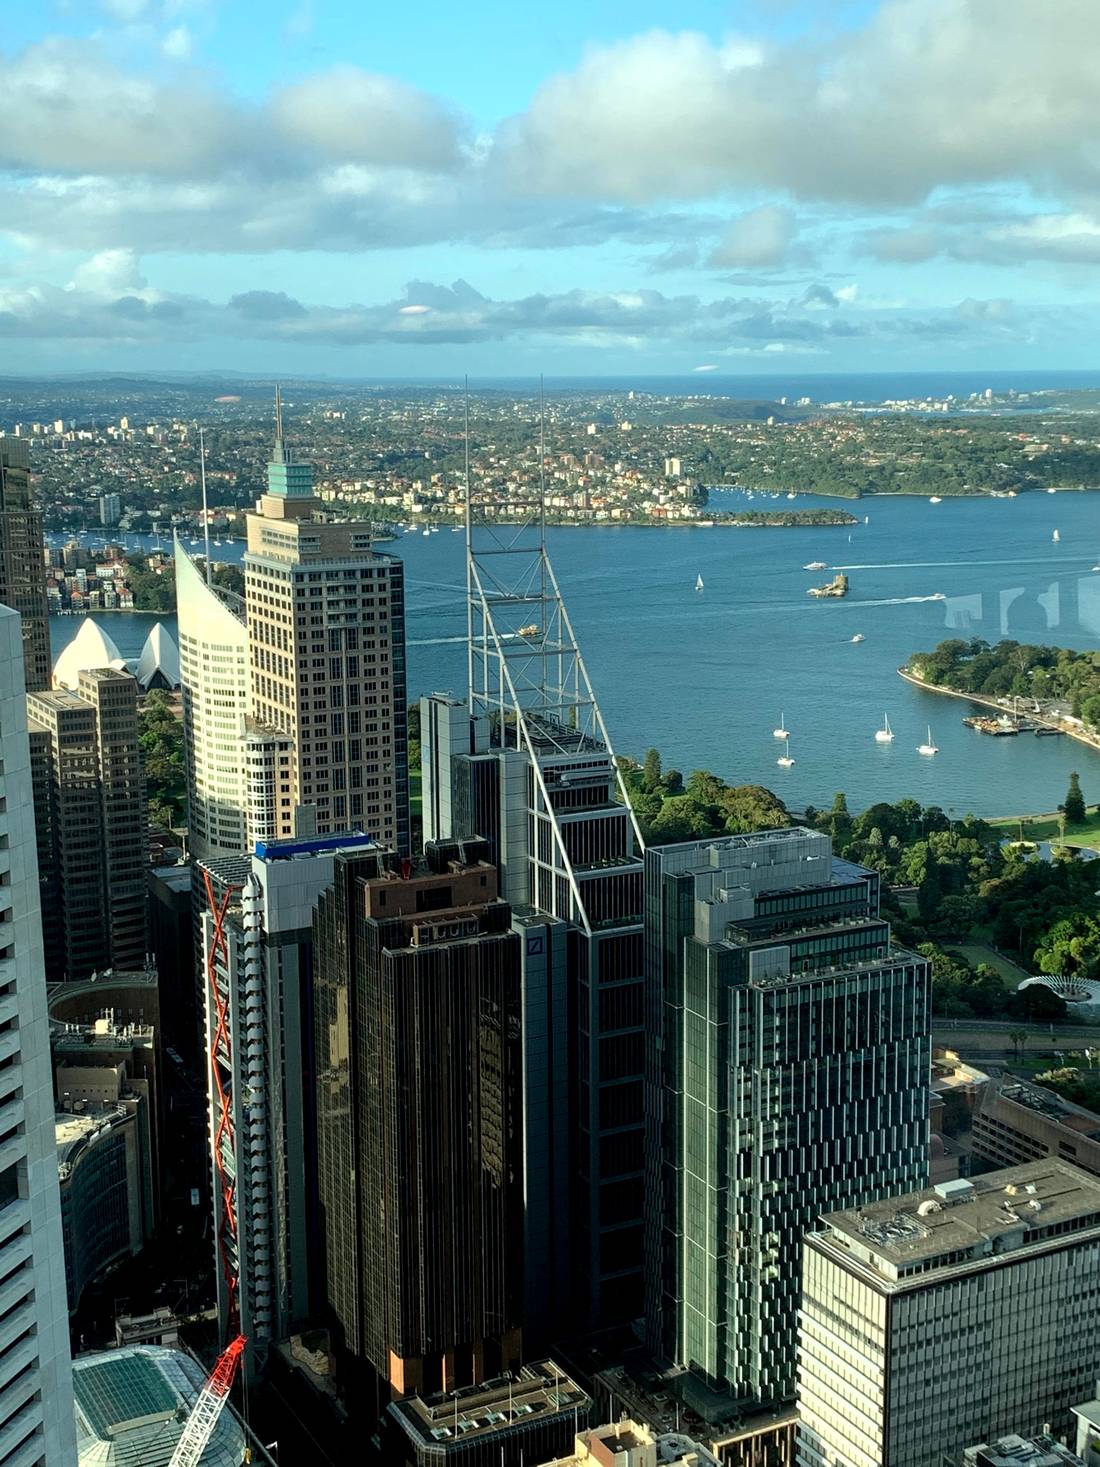 La vista desde la Torre de Sydney / View from Sydney Tower / Widok z wieży